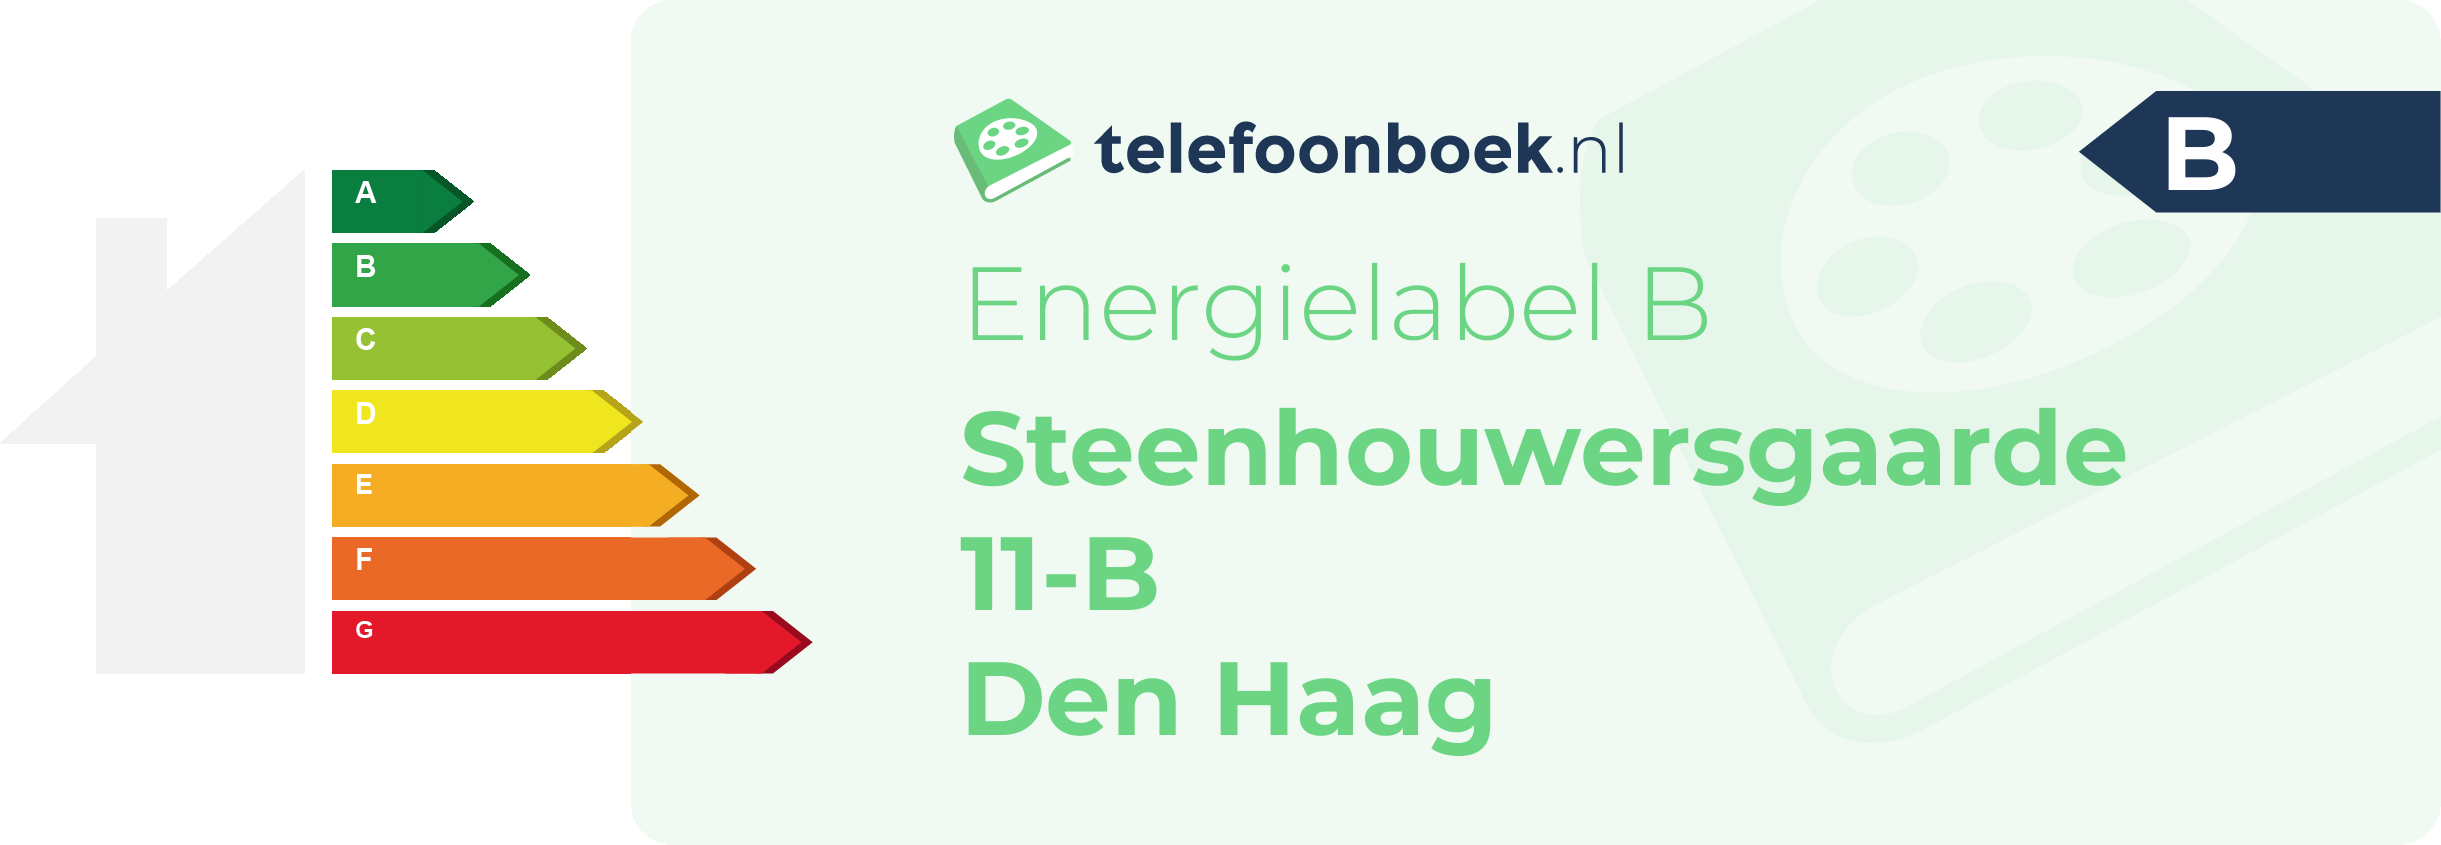 Energielabel Steenhouwersgaarde 11-B Den Haag